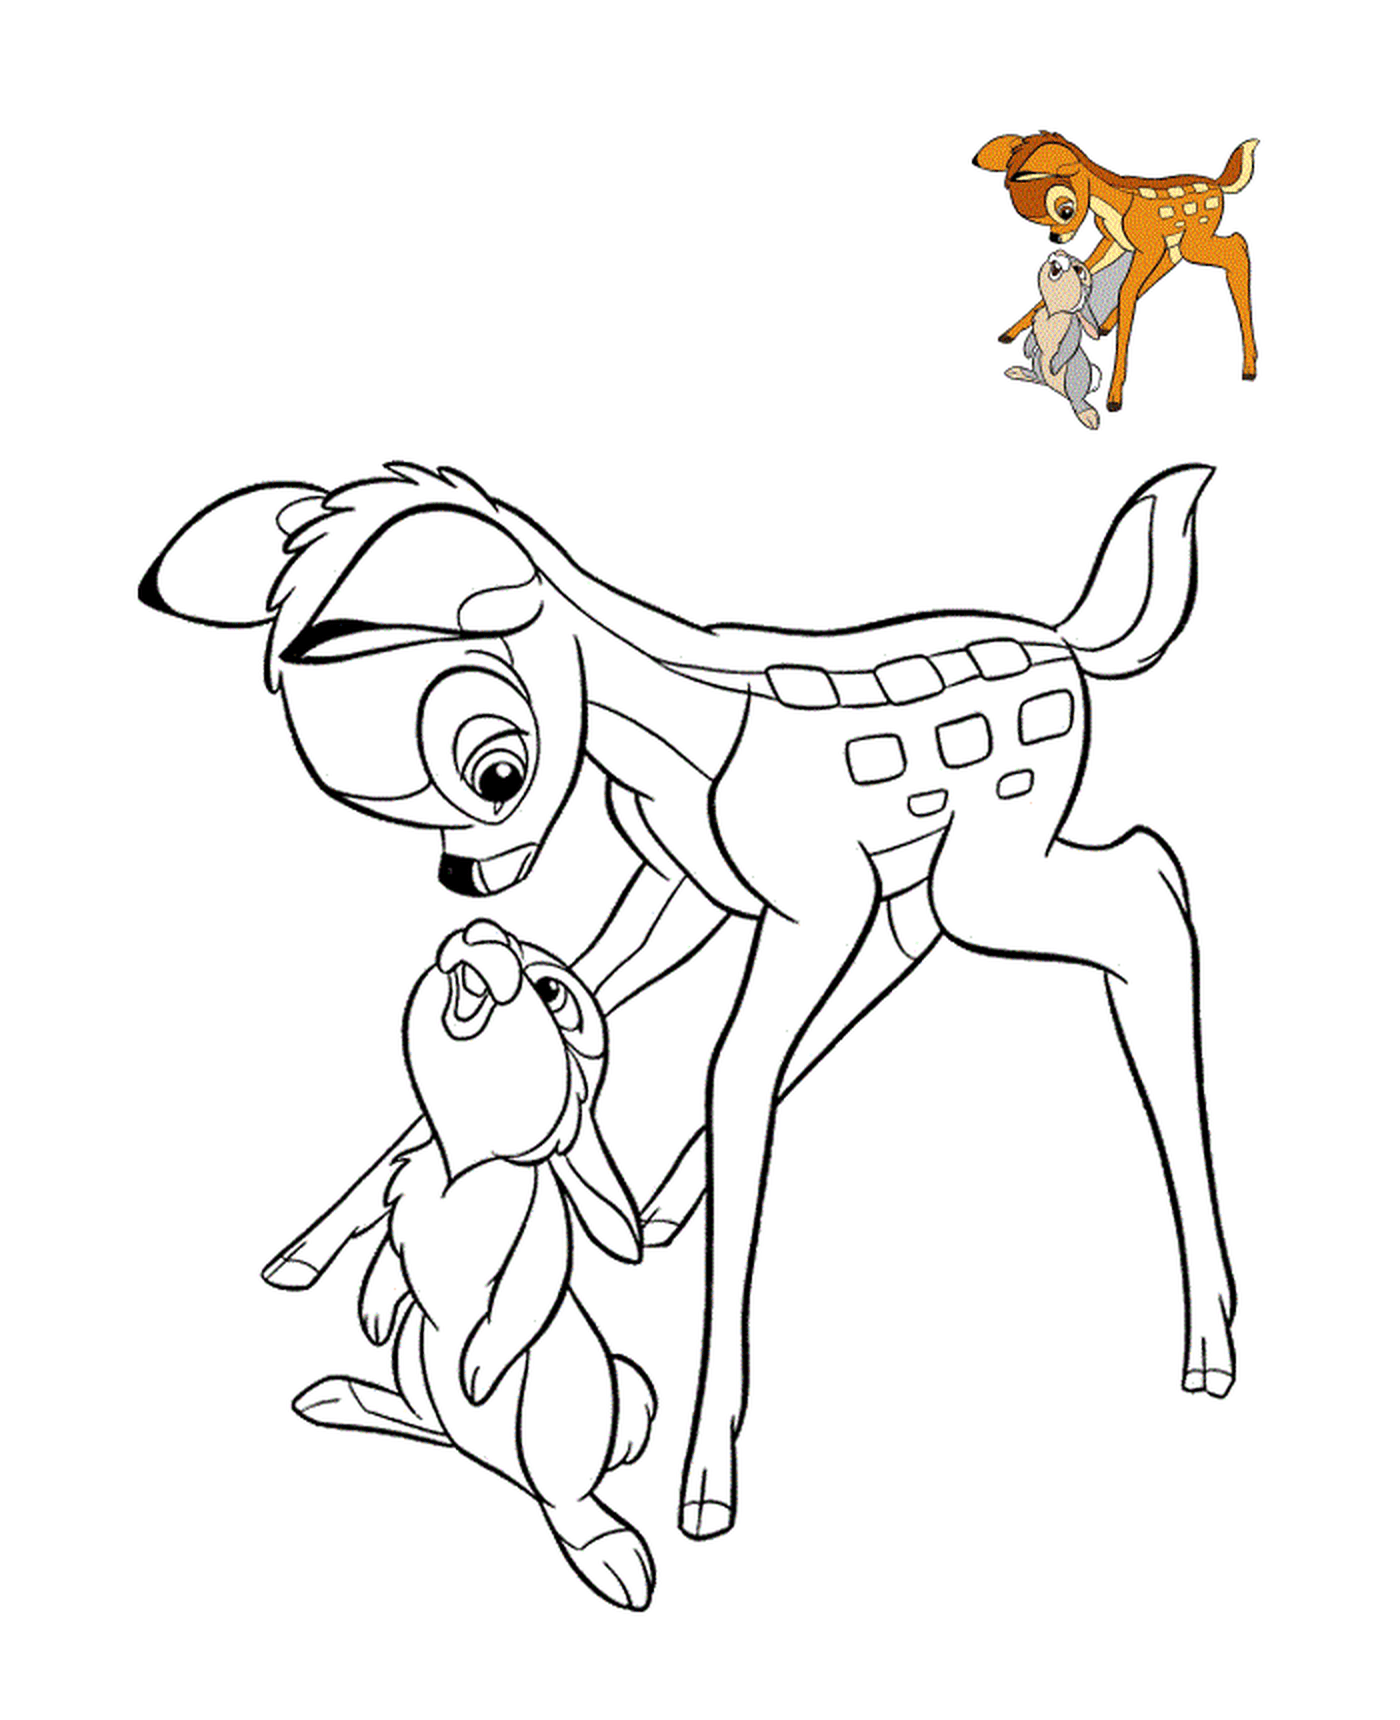   bambi et panpan 